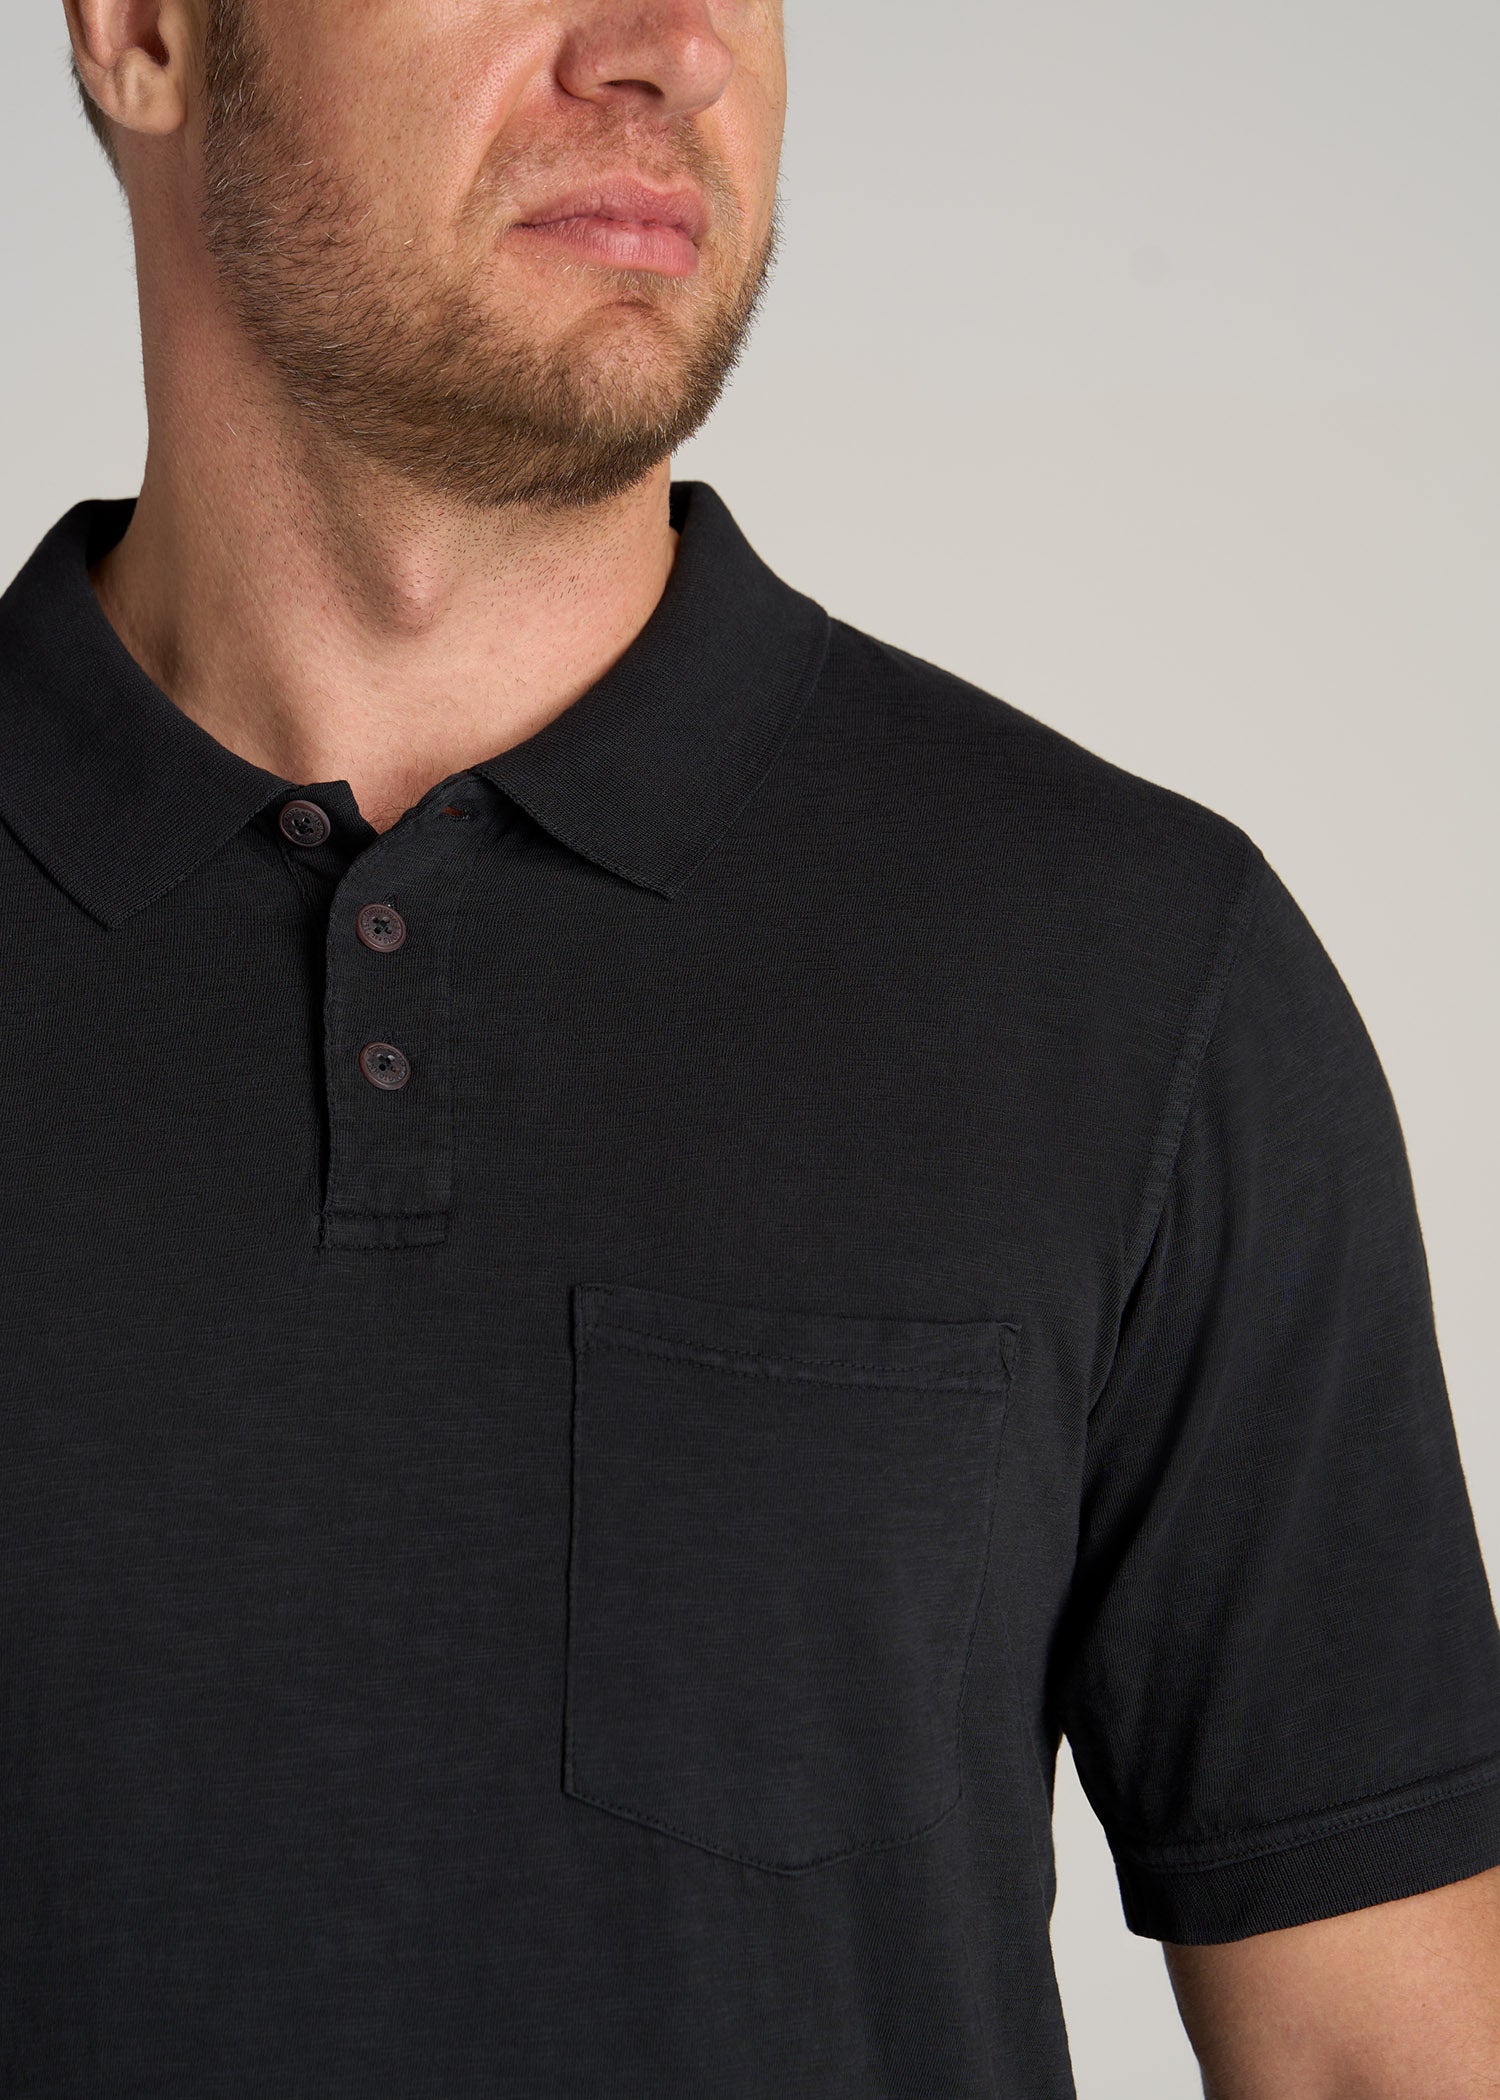         American-Tall-Men-LJ-Slub-Pocket-Polo-Shirt-Vintage-Black-detail